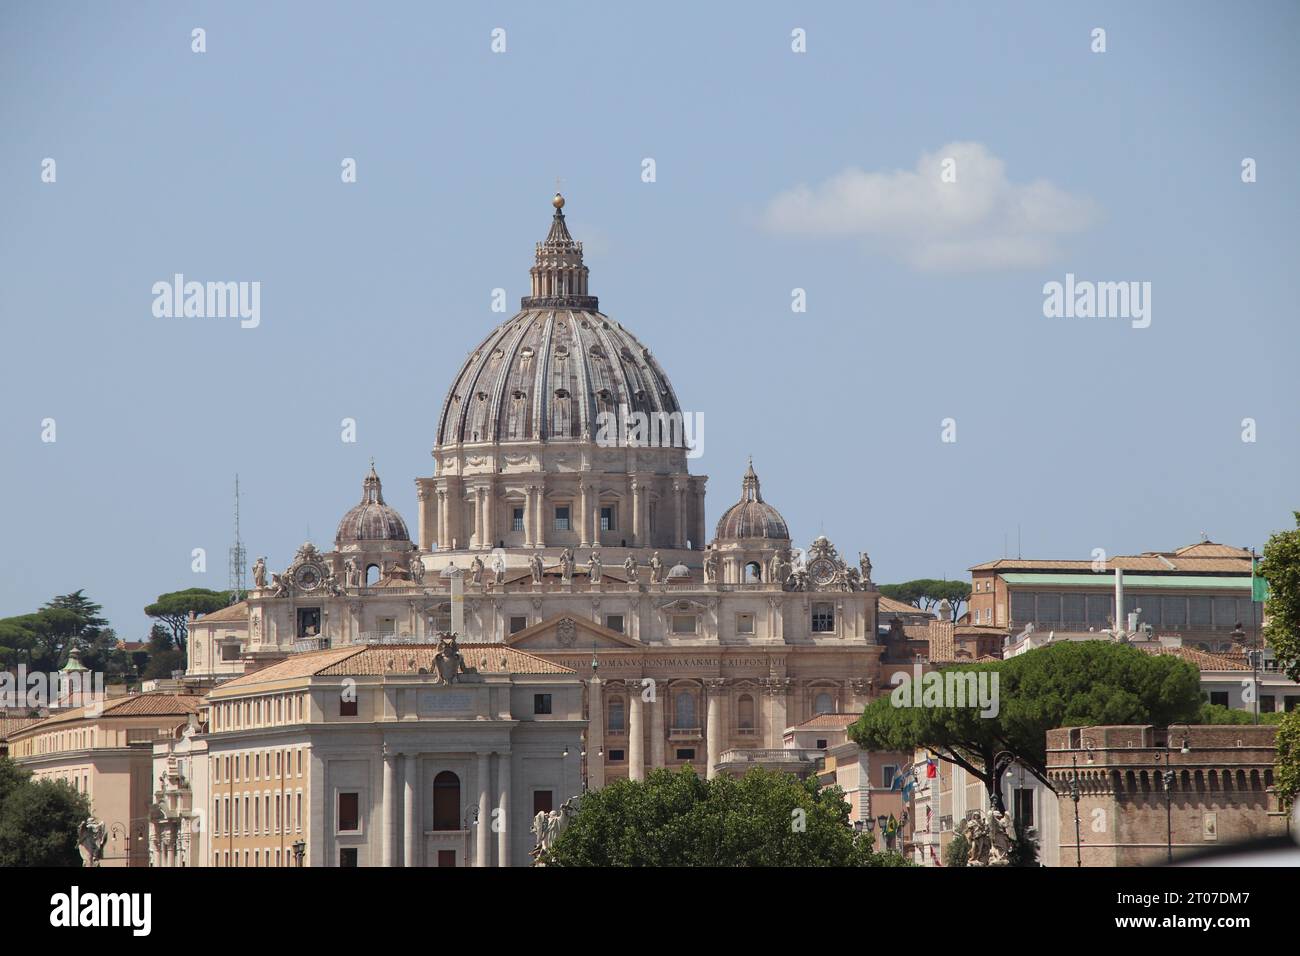 Façade et dôme de la basilique papale de Saint-Pierre au Vatican (basilique de San Pietro), une église de style Renaissance dans la Cité du Vatican, dans le c Banque D'Images